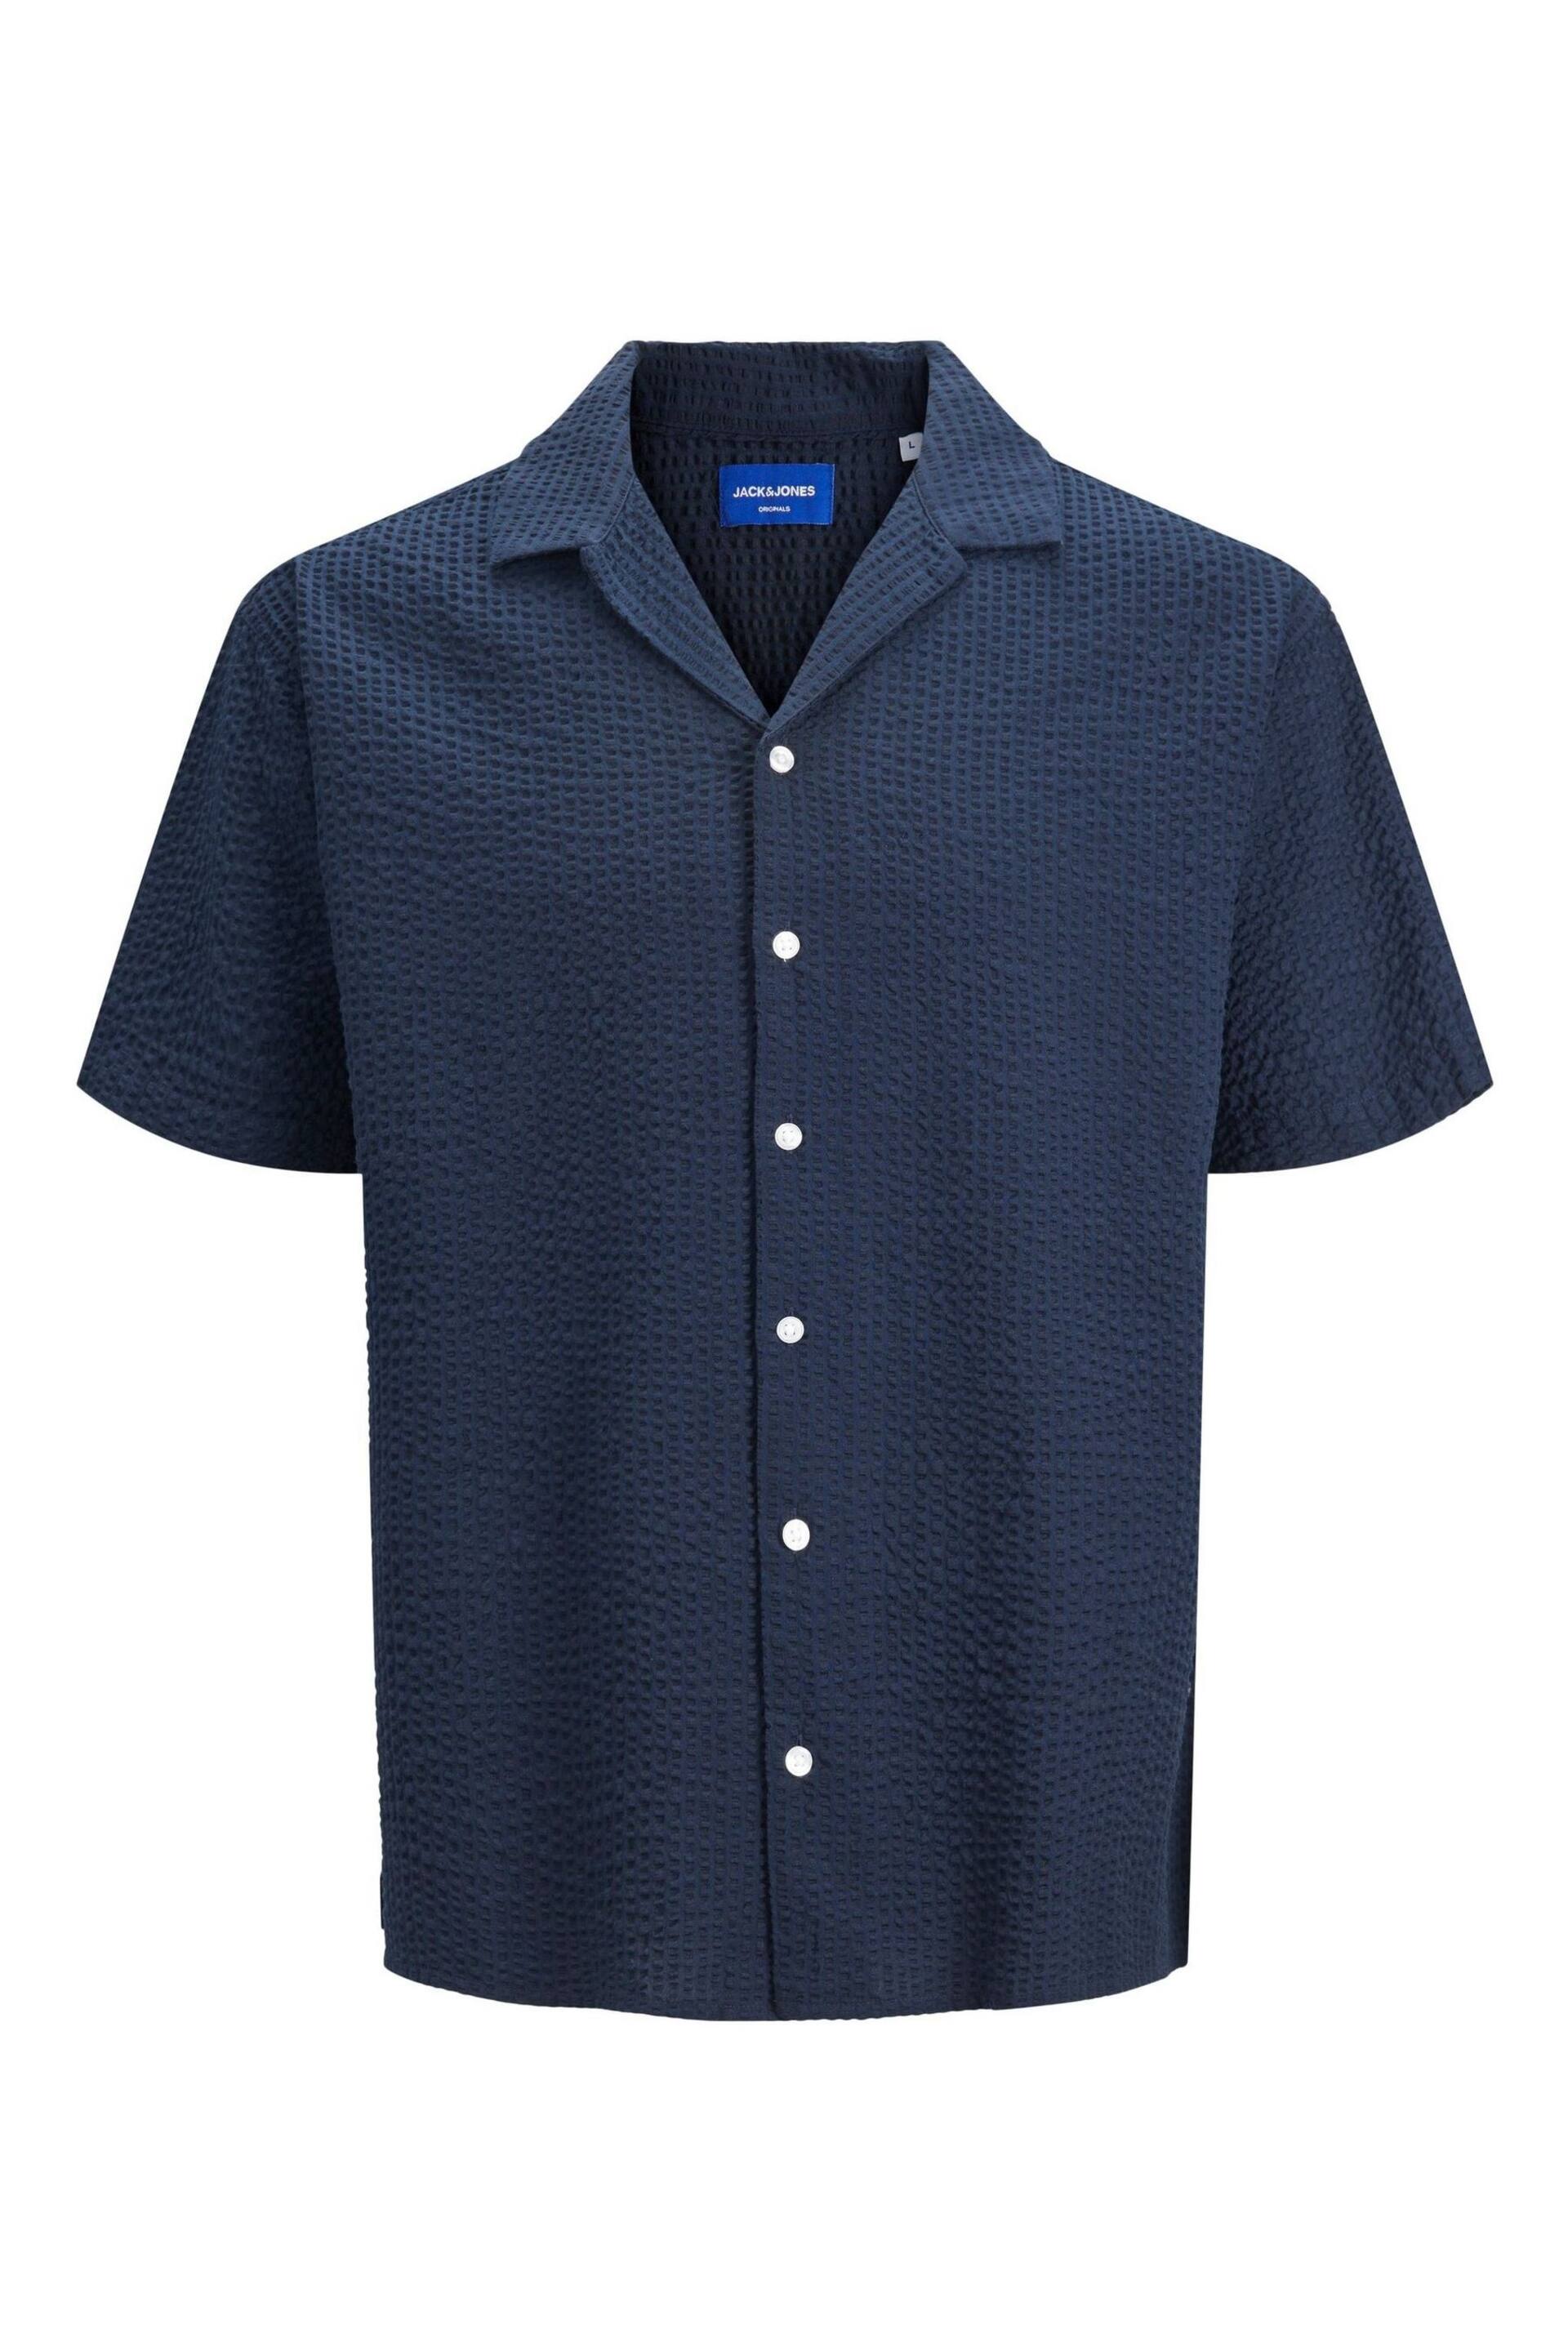 JACK & JONES Navy Blue Seersucker Resort Shirt - Image 1 of 1